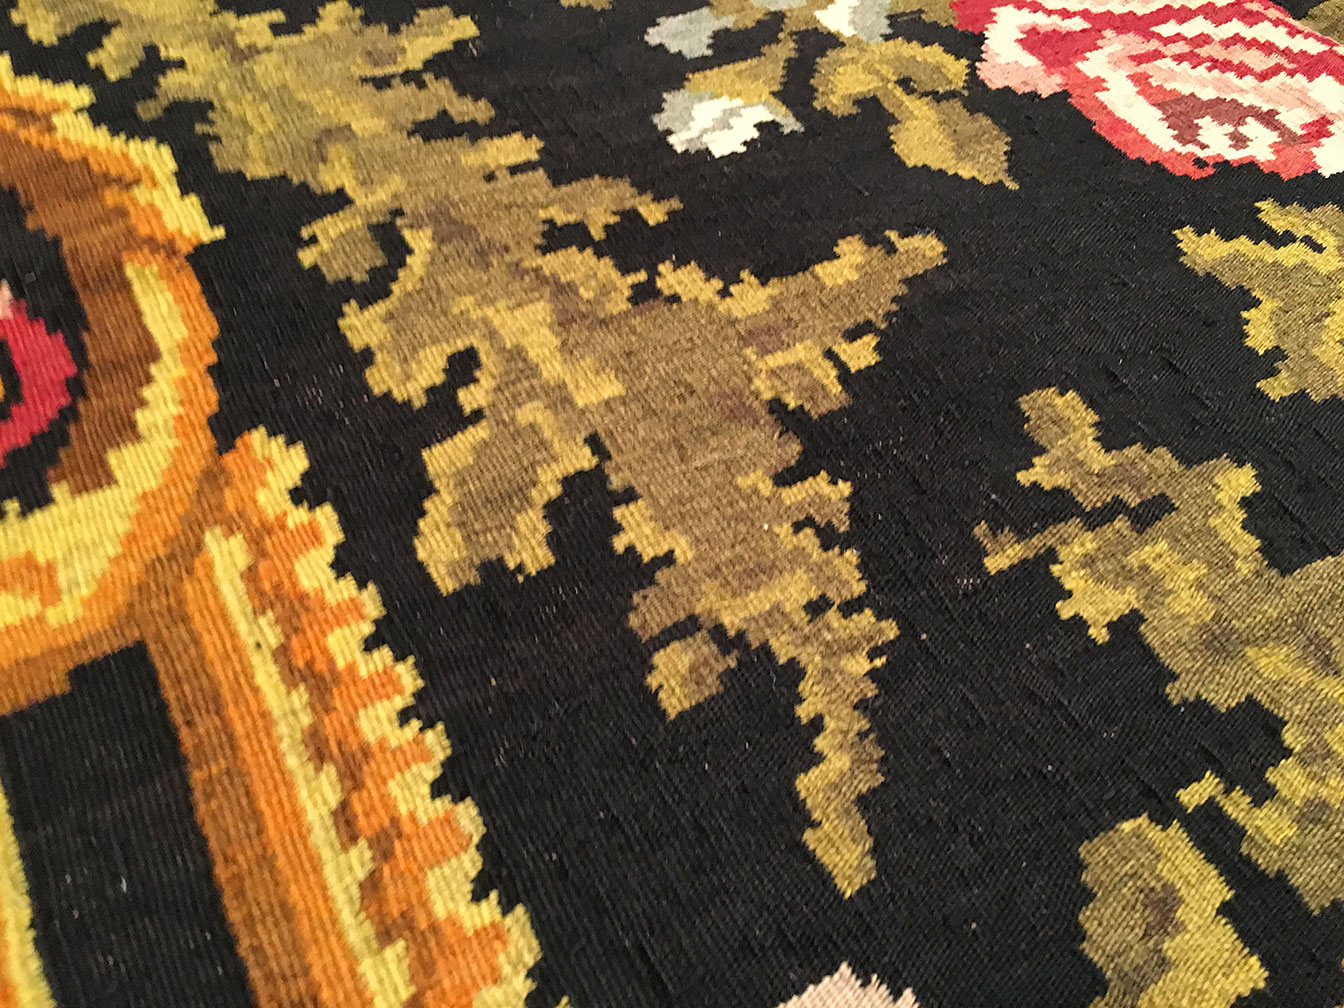 Antique bessarabian Carpet - # 90992